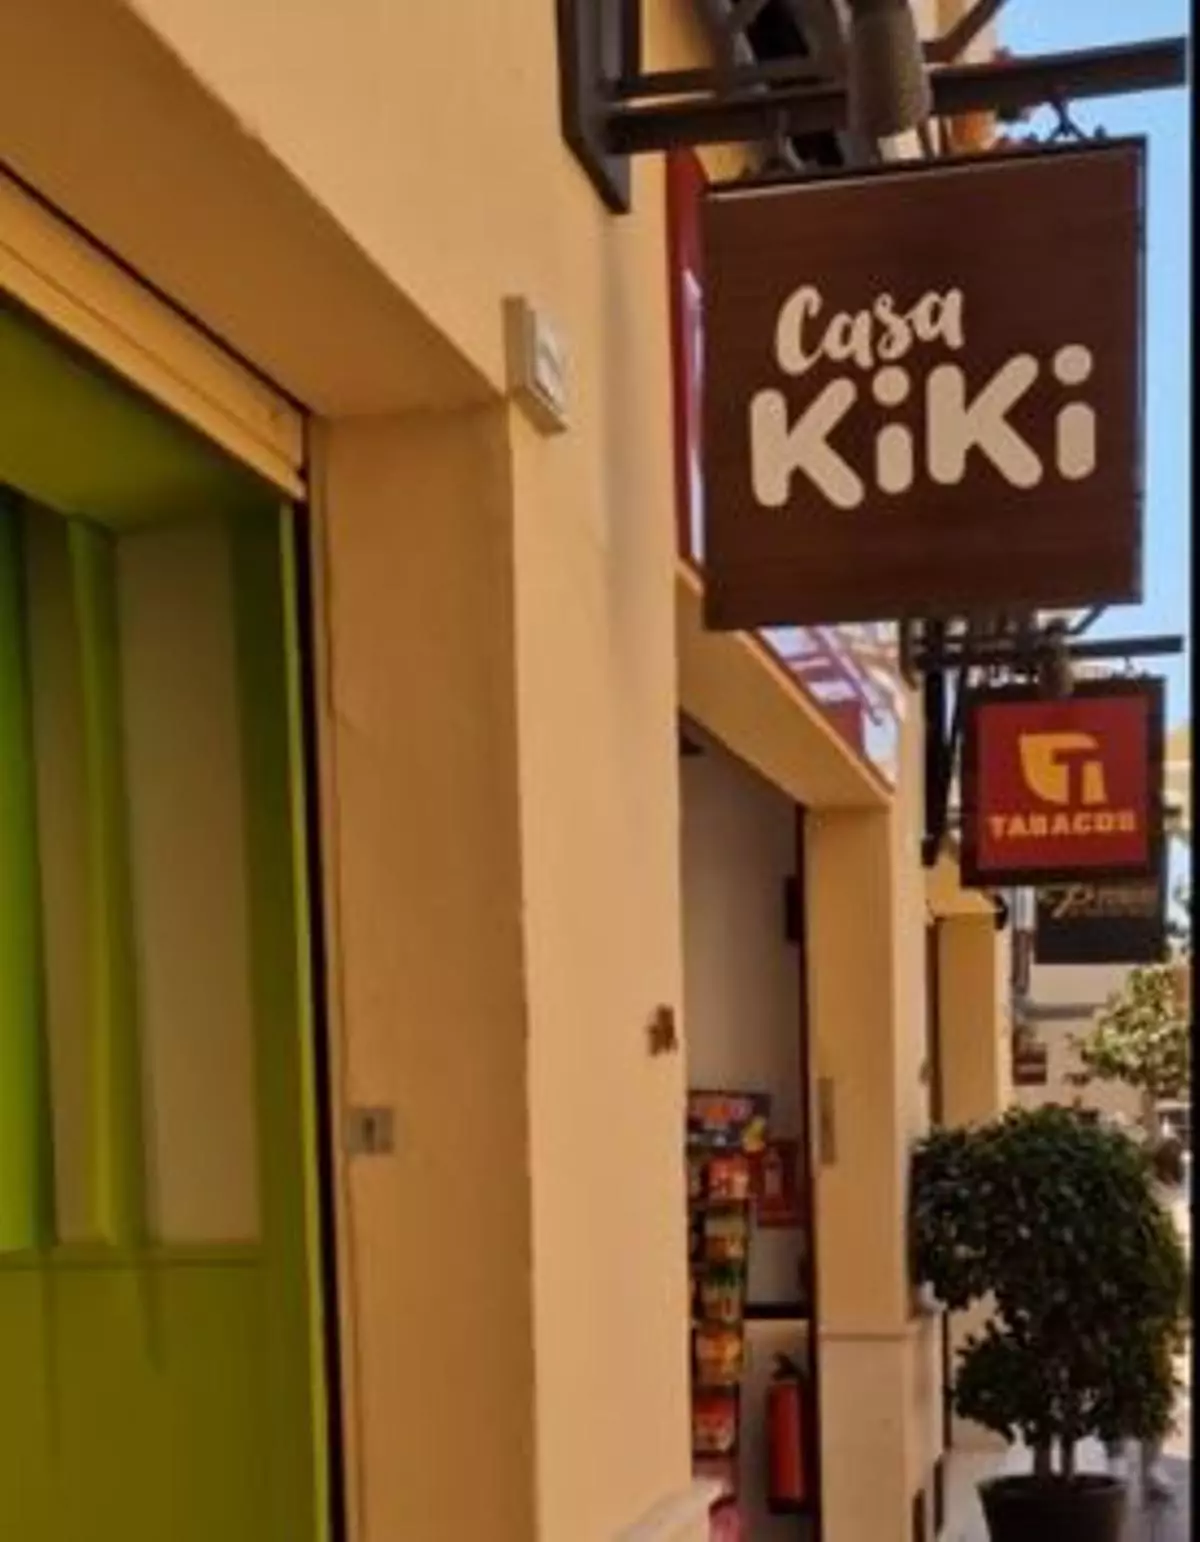 Casa Kiki abre en Plaza Mayor, que alcanza el 100% de ocupación